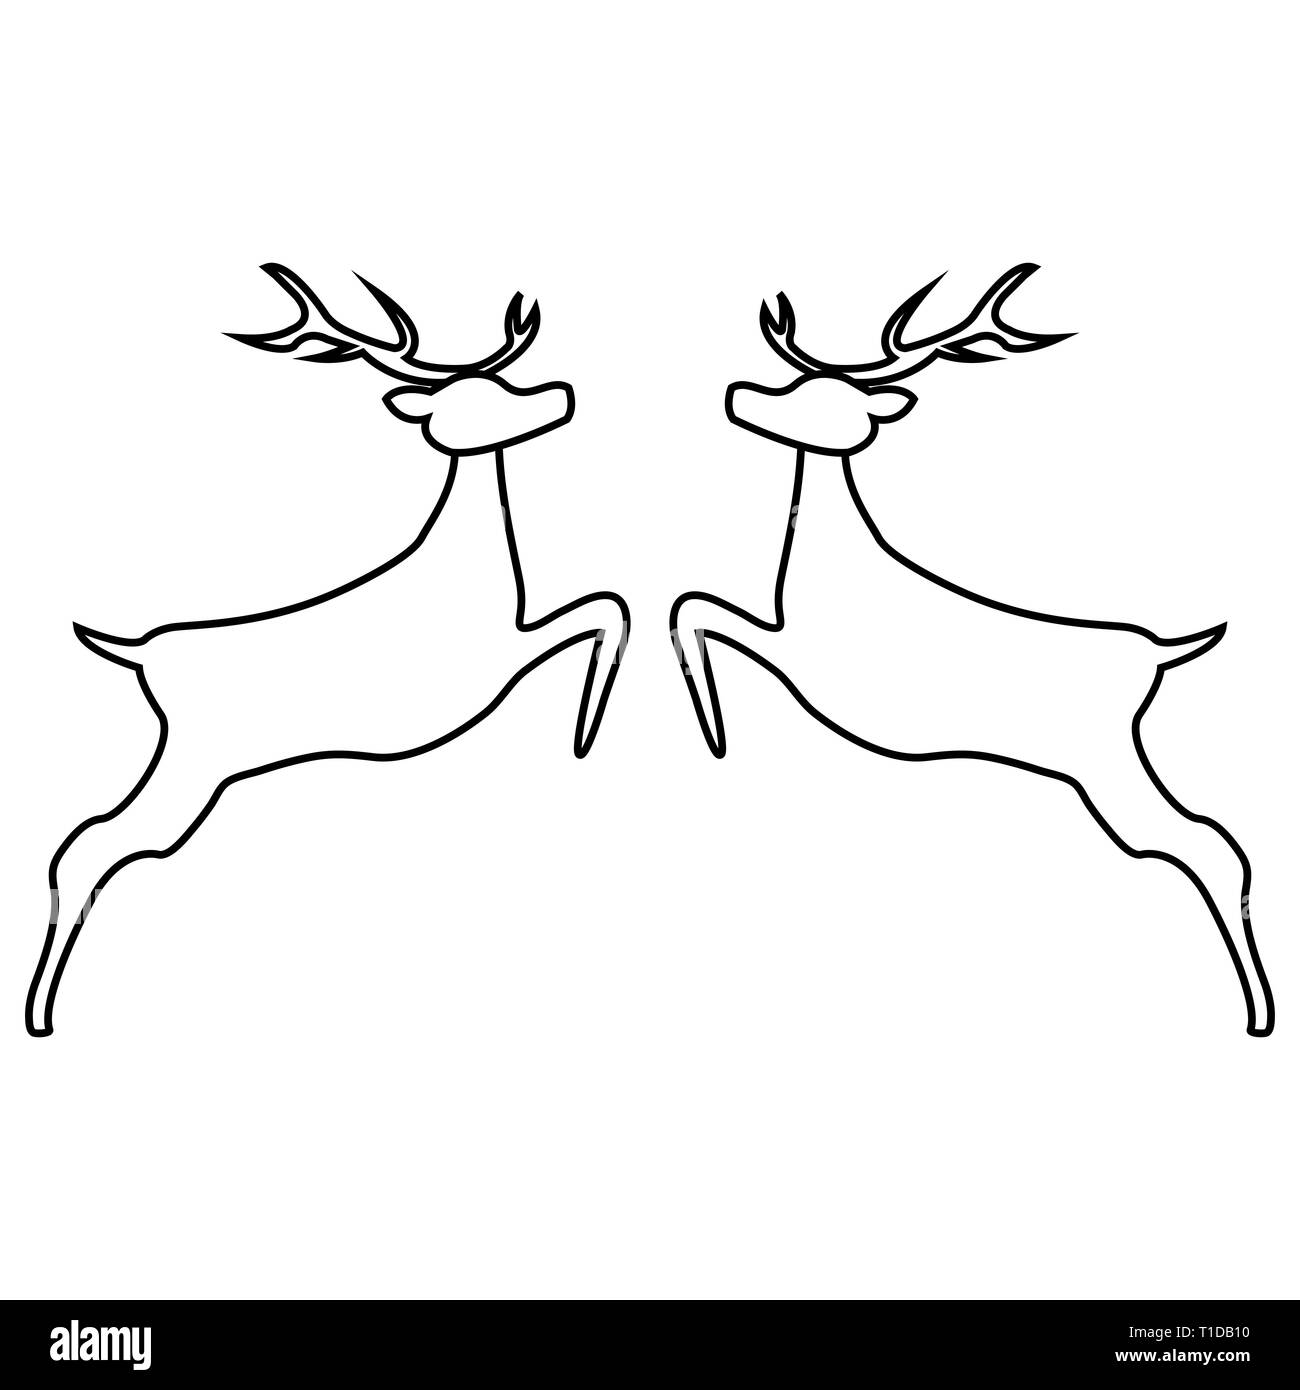 Zwei Rentiere zusammen Springen auf einem weißen Hintergrund, Vector Illustration Stock Vektor